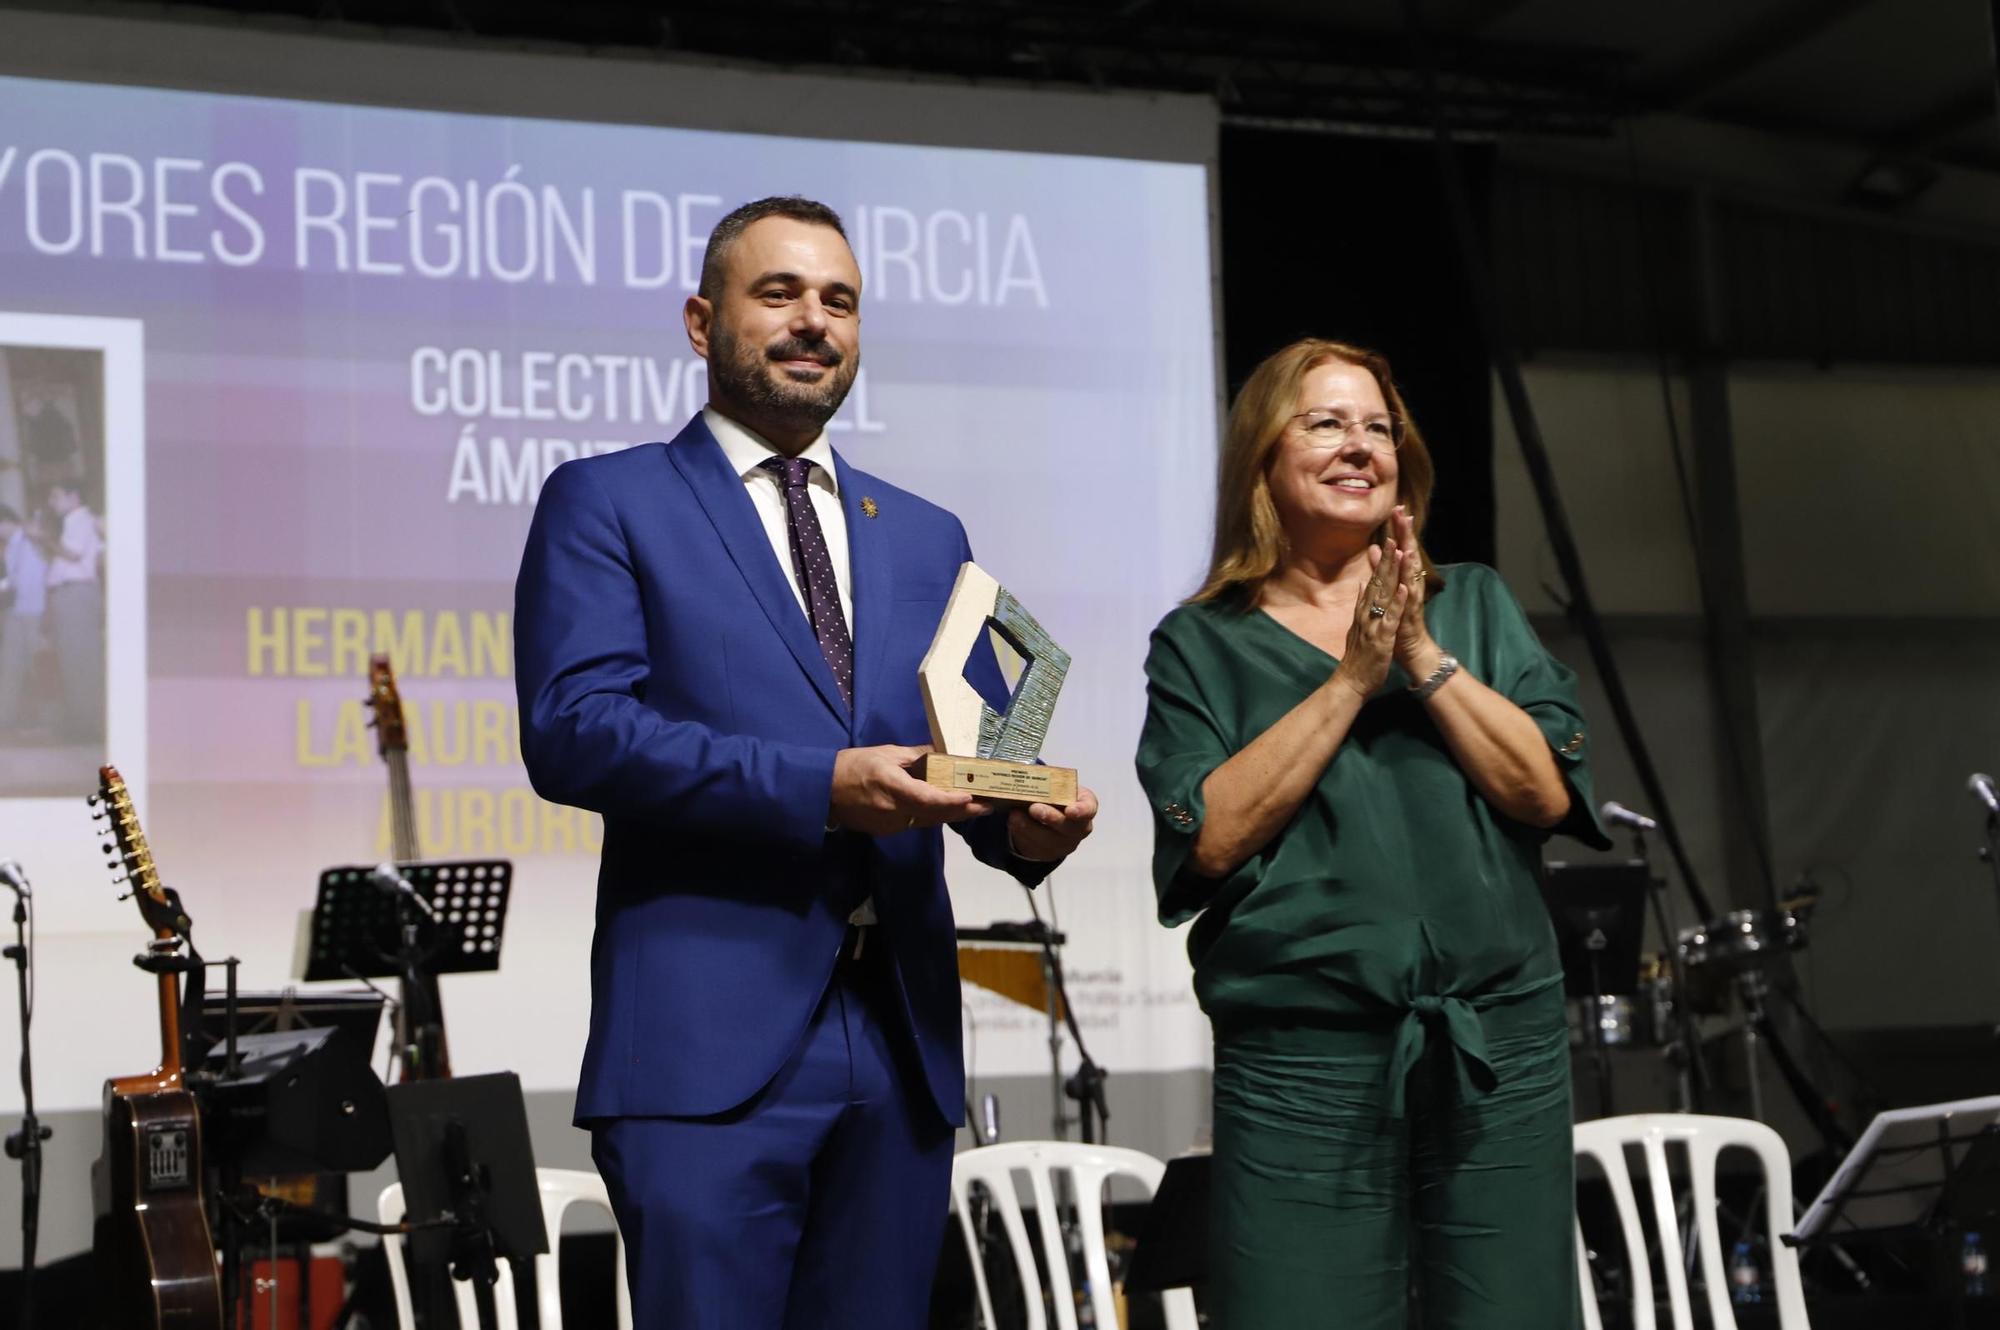 Premios Mayores de la Región de Murcia